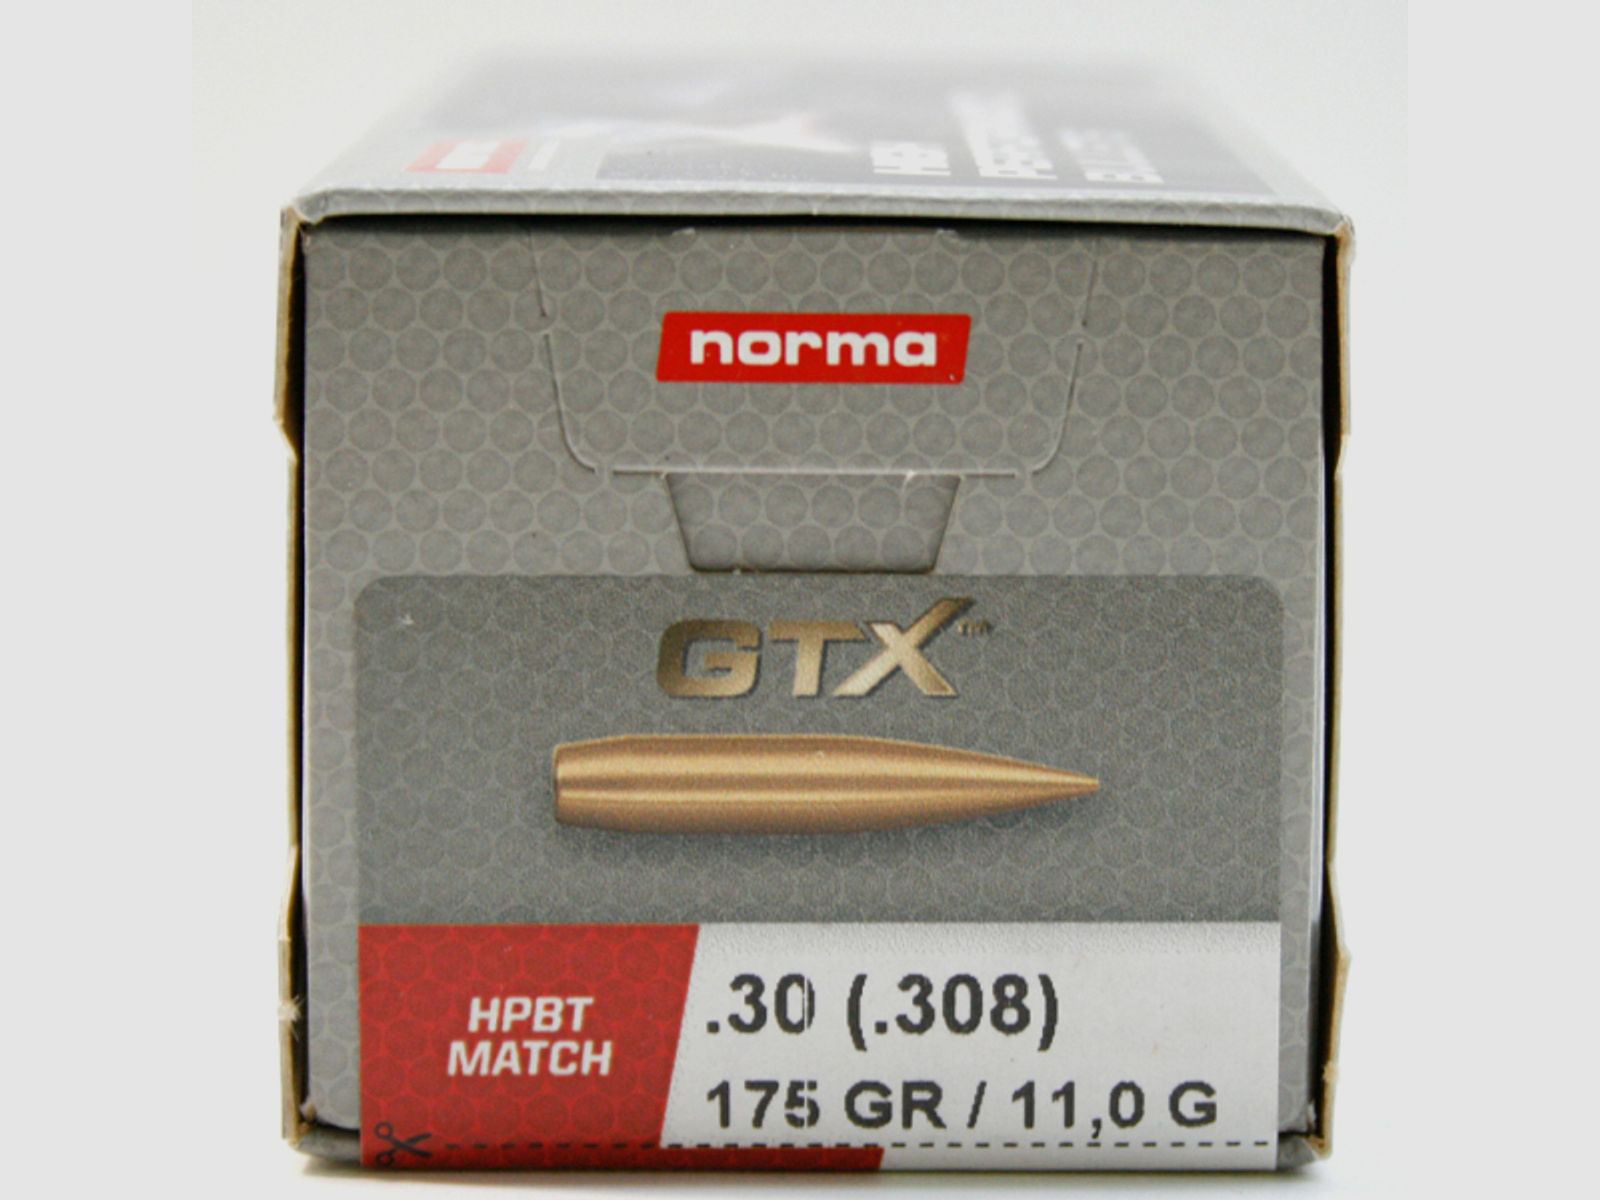 100 Stück NEUE NORMA HPBT Hohlspitz MATCH Geschosse GTX - CAL 30 .308 175gr 11,0g HPBT GOLDEN TARGET